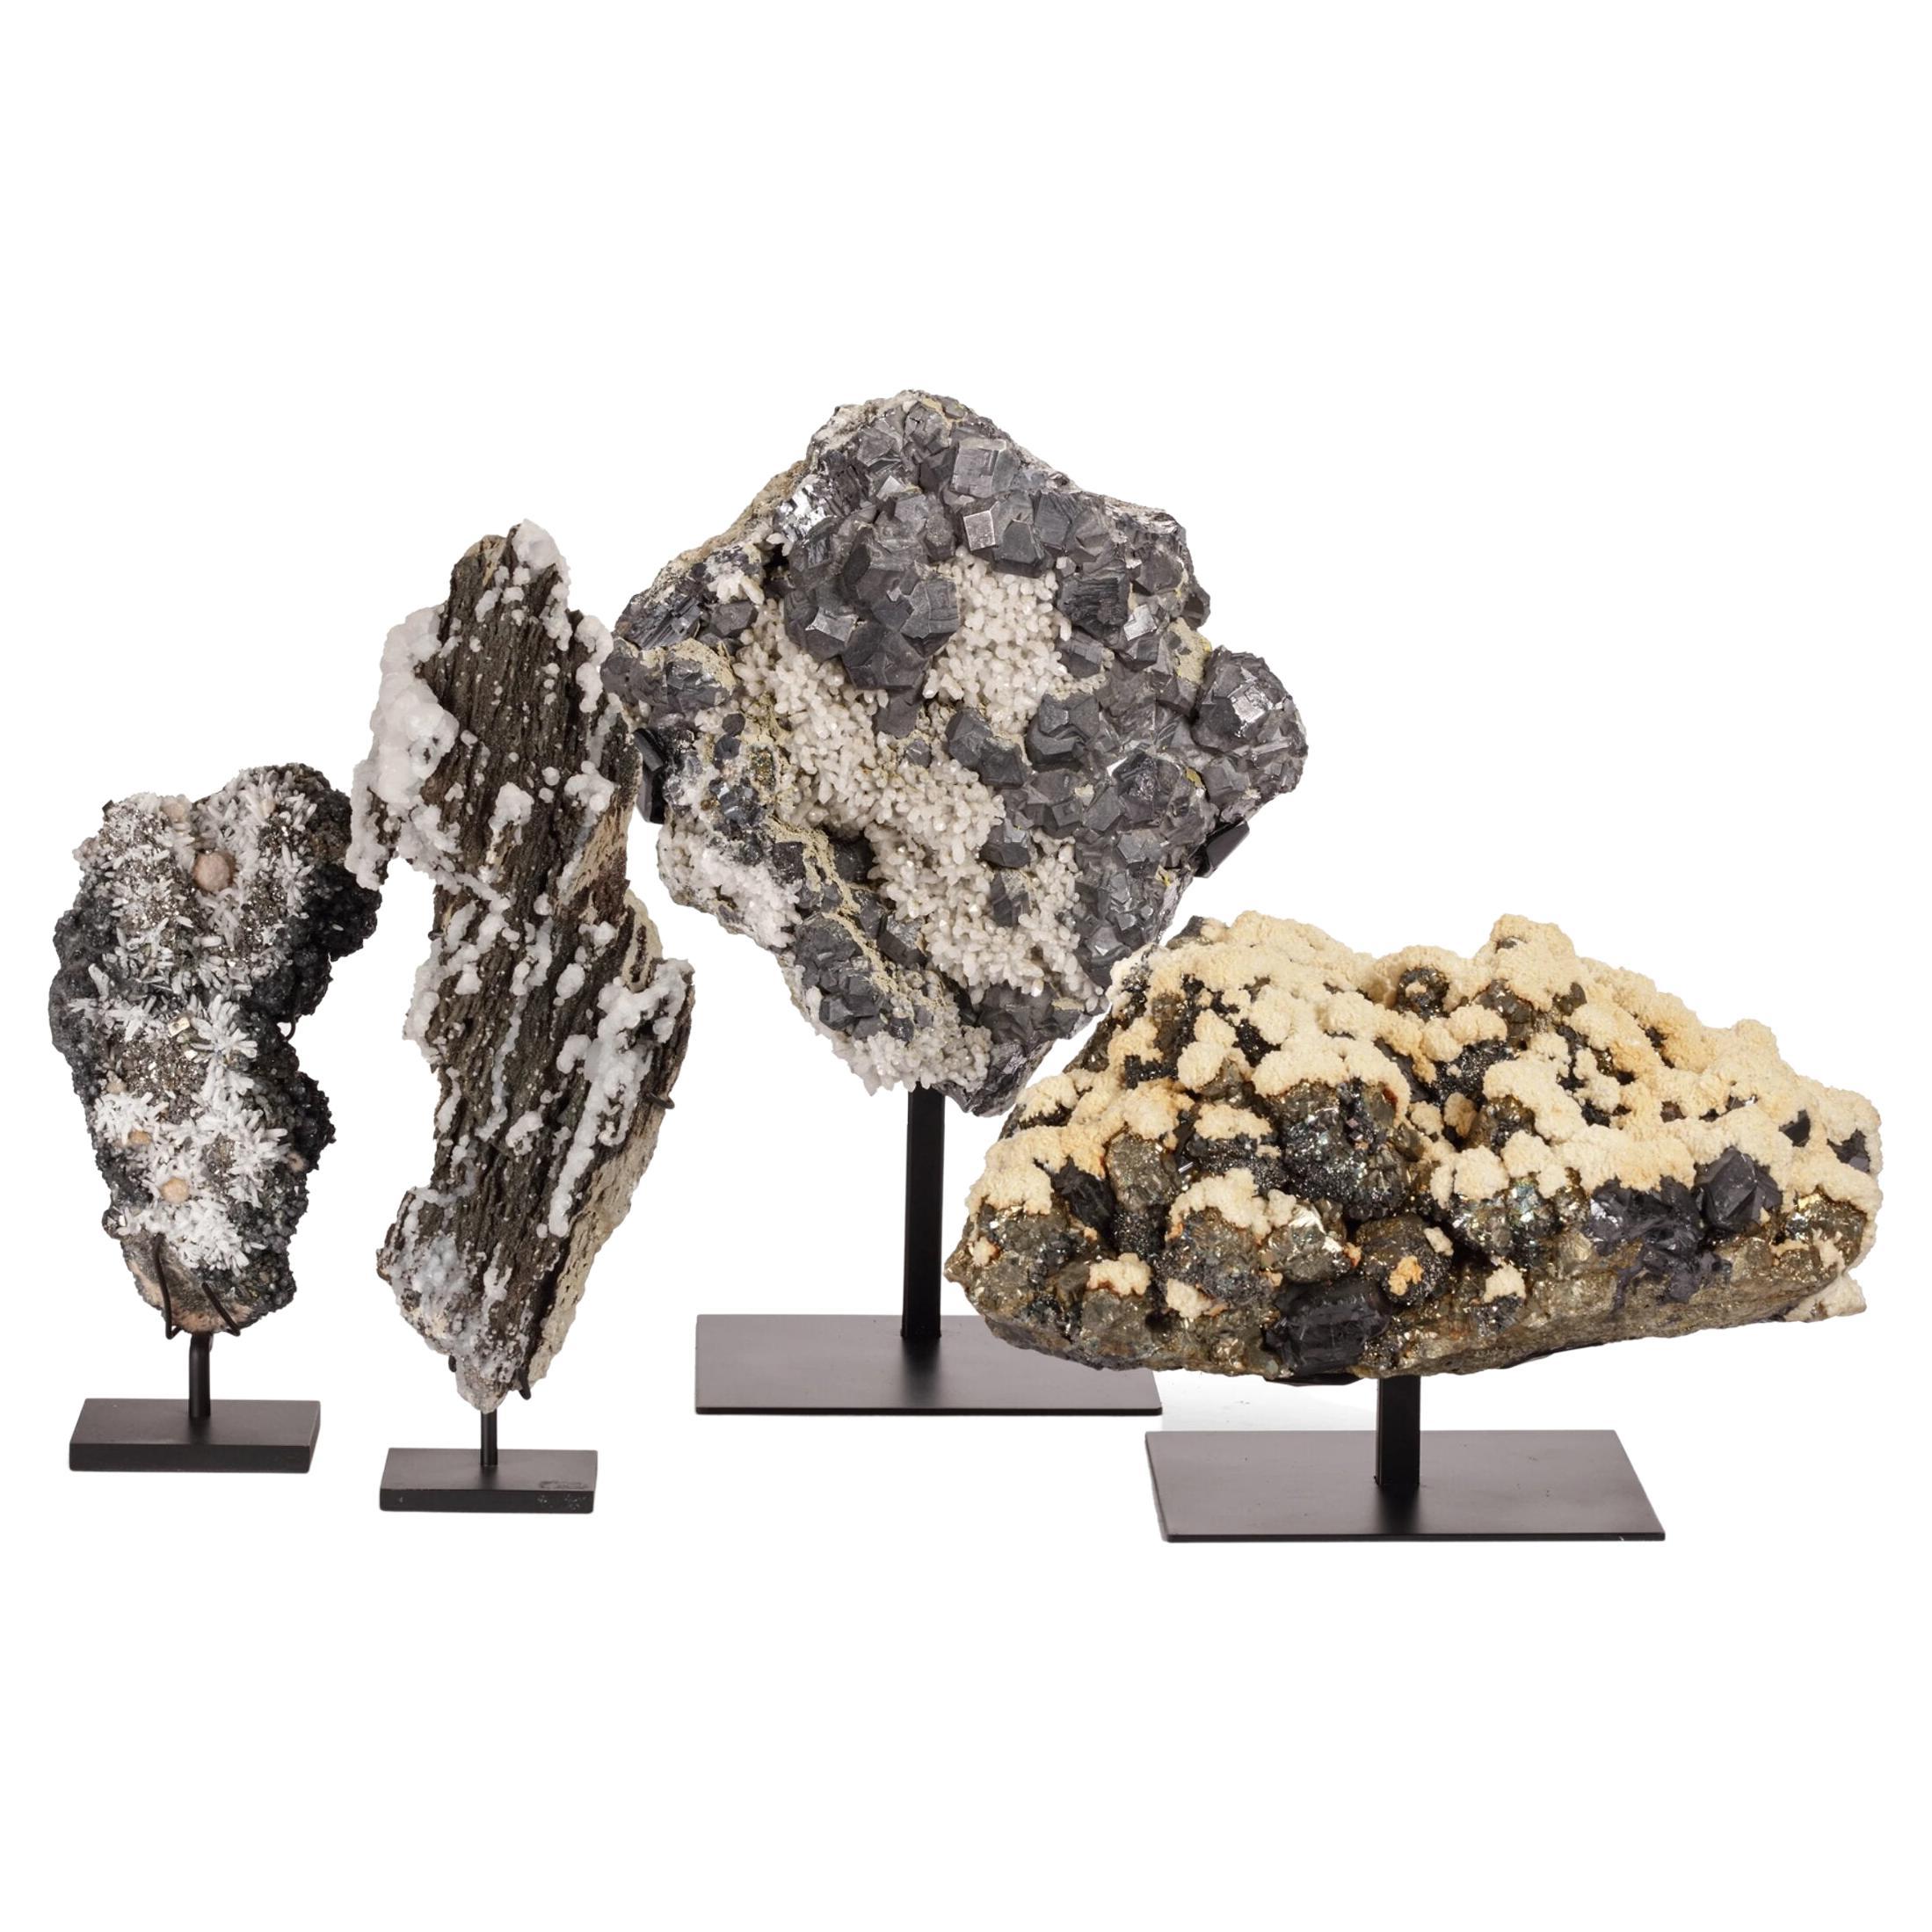 Kollektion prächtiger Mineralexemplare, natürlich als Schneegräser geformt